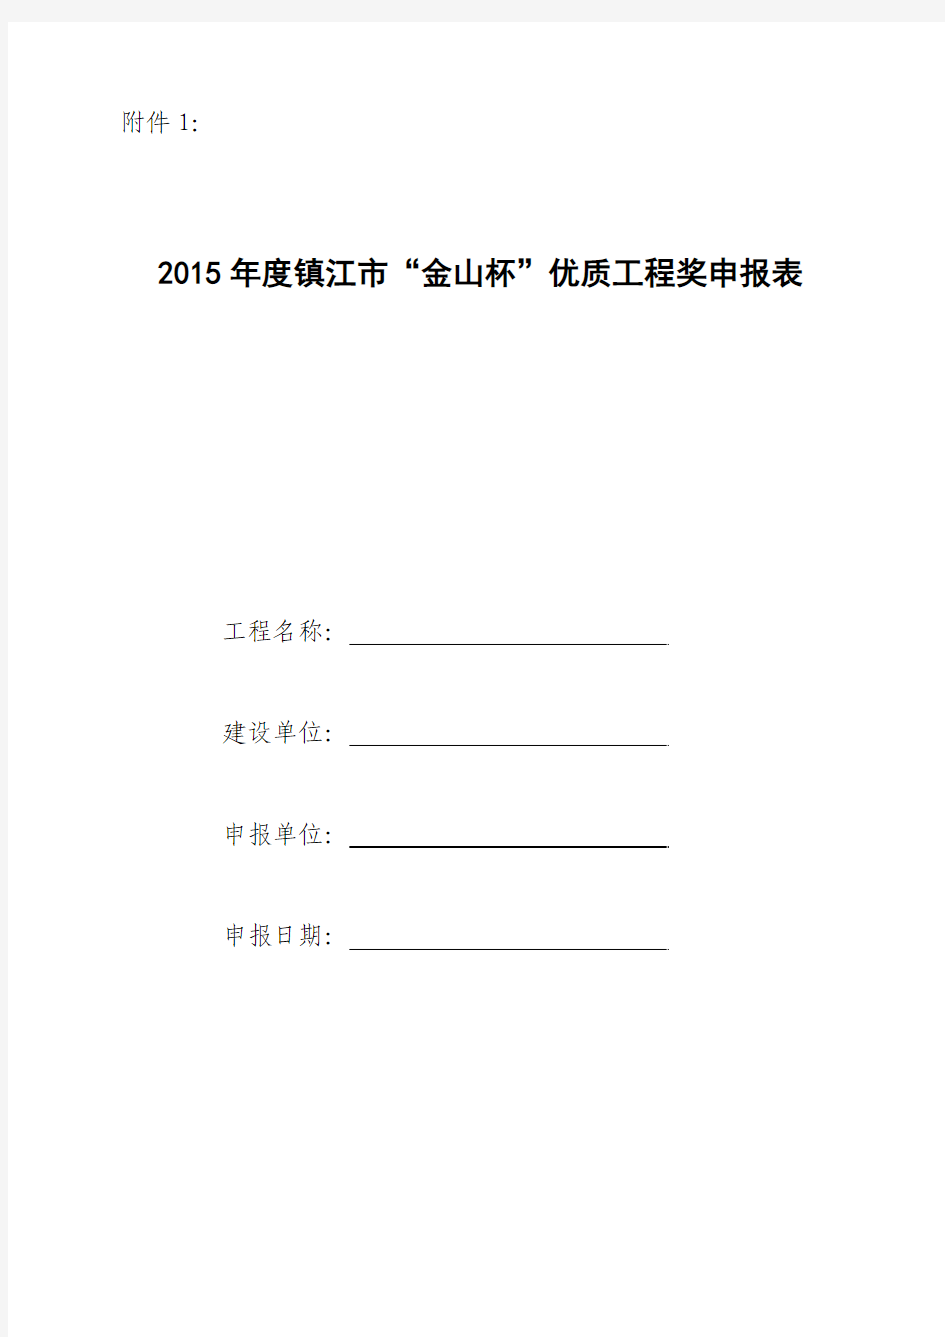 2015年度镇江市“金山杯”优质工程奖申报表